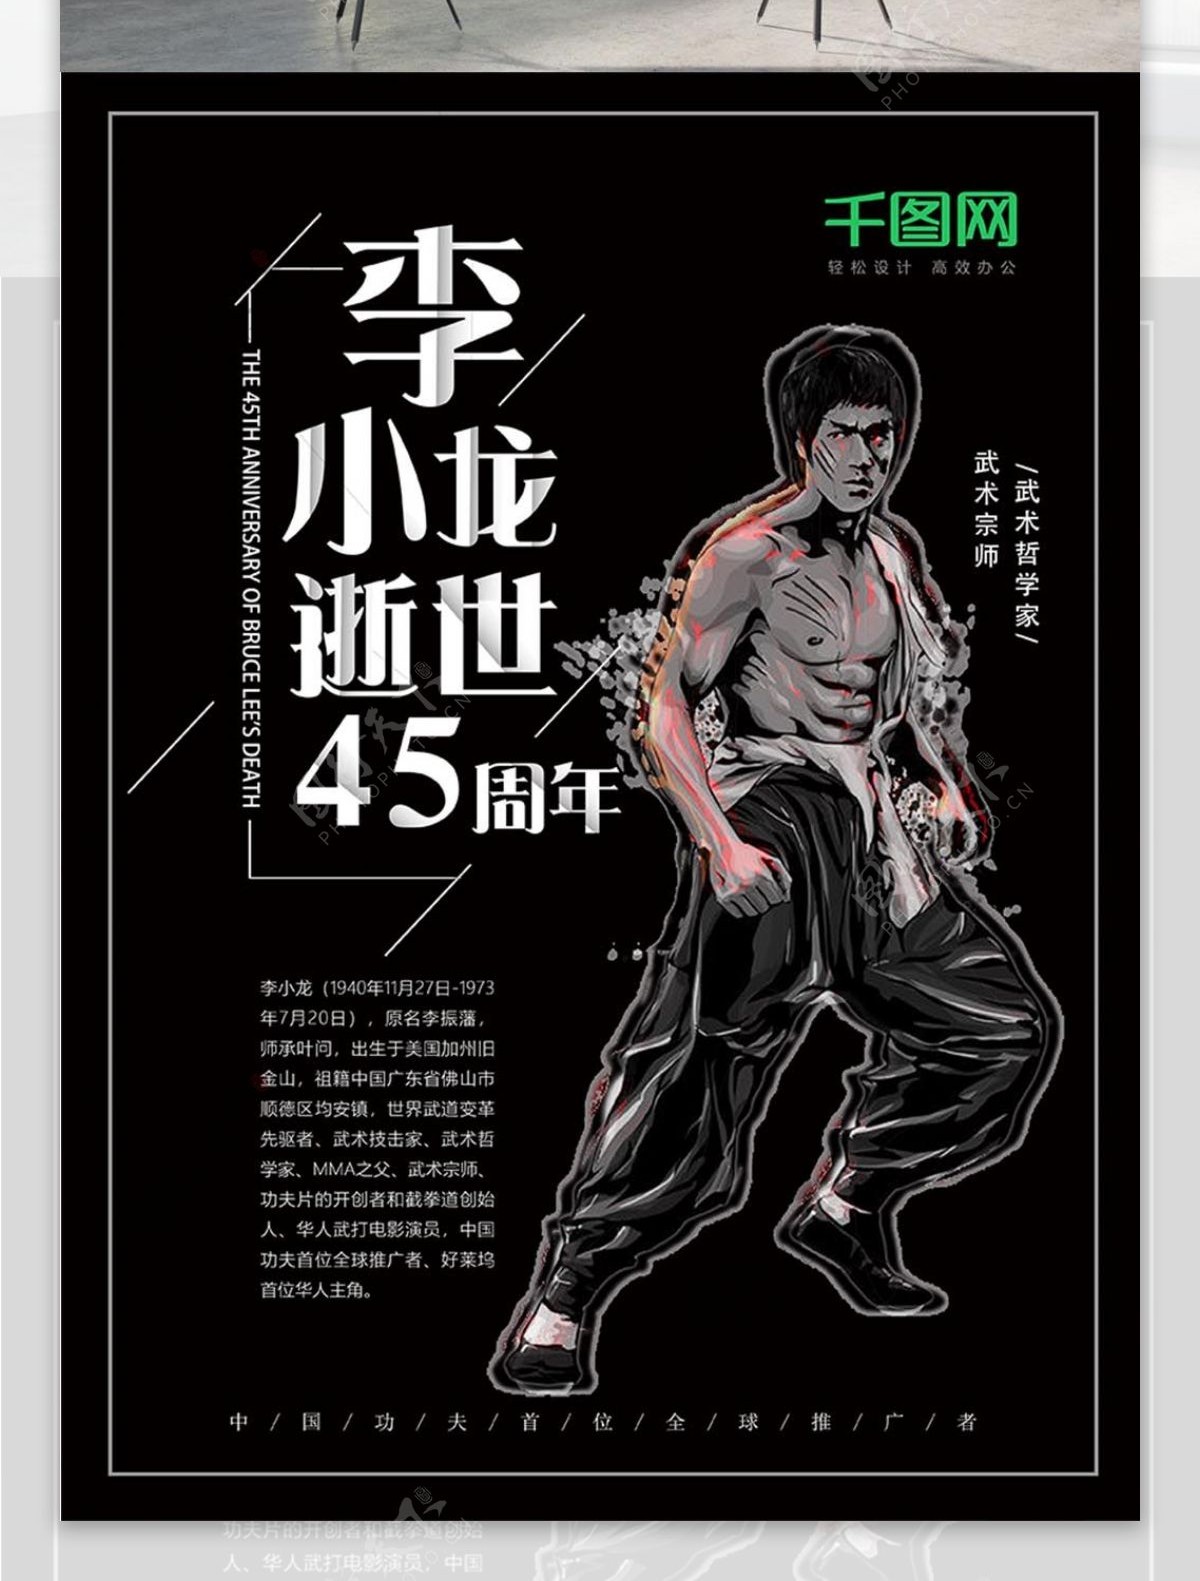 纪念李小龙逝世45周年黑色海报设计